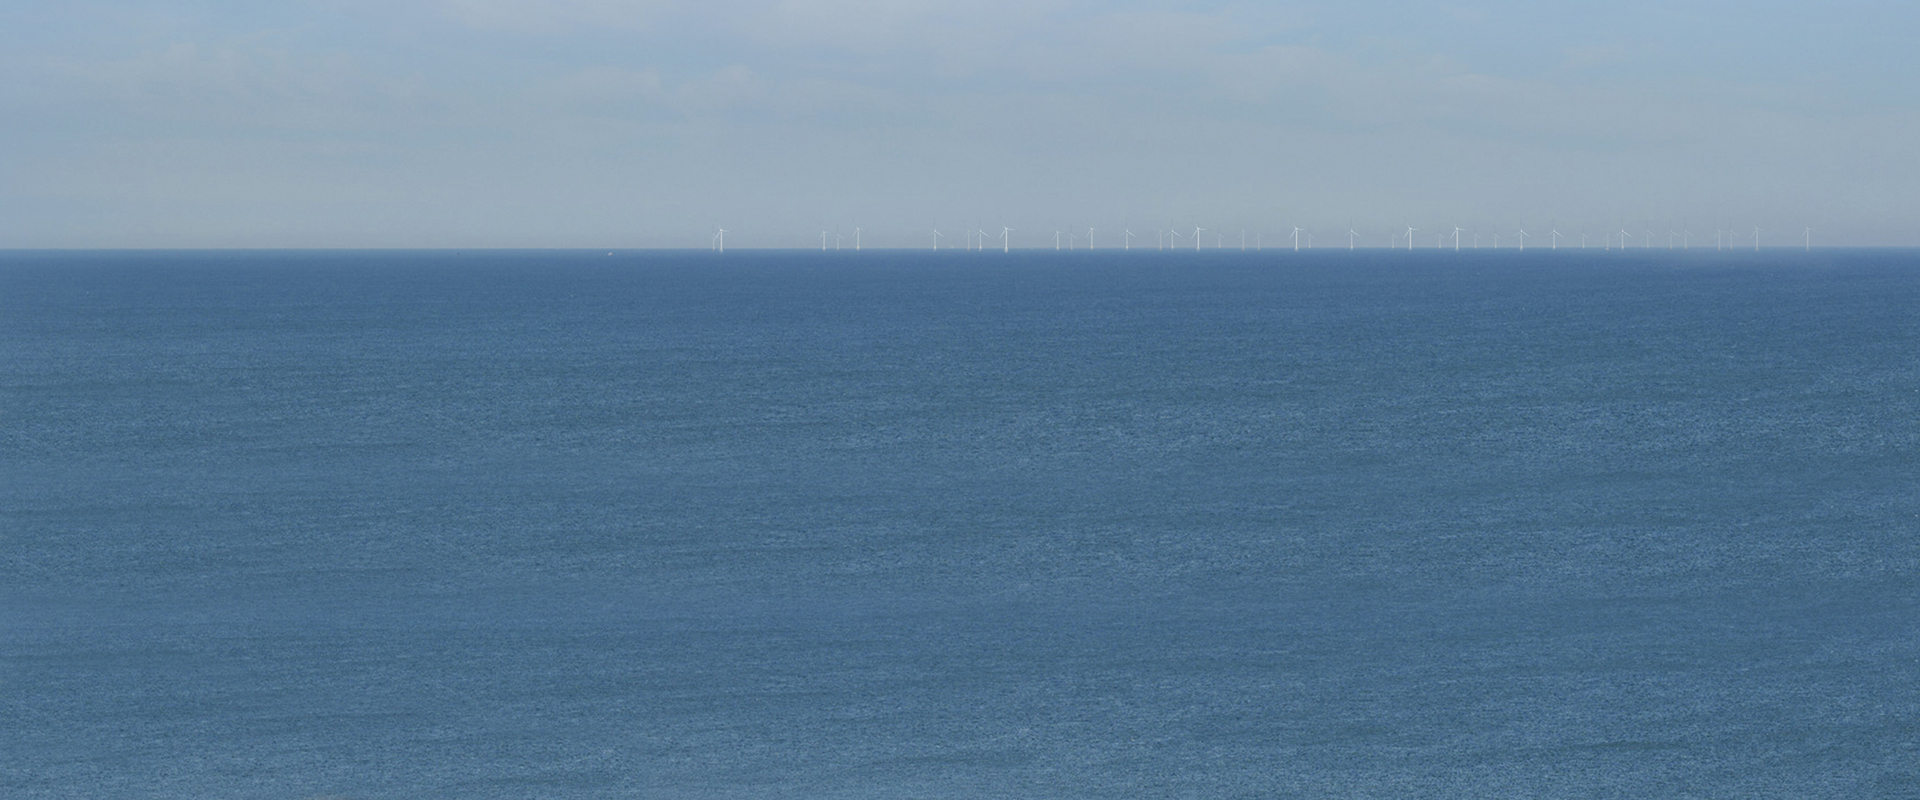 DEME et Jan De Nul sont en lice pour des travaux sur un parc éolien au large des côtes françaises